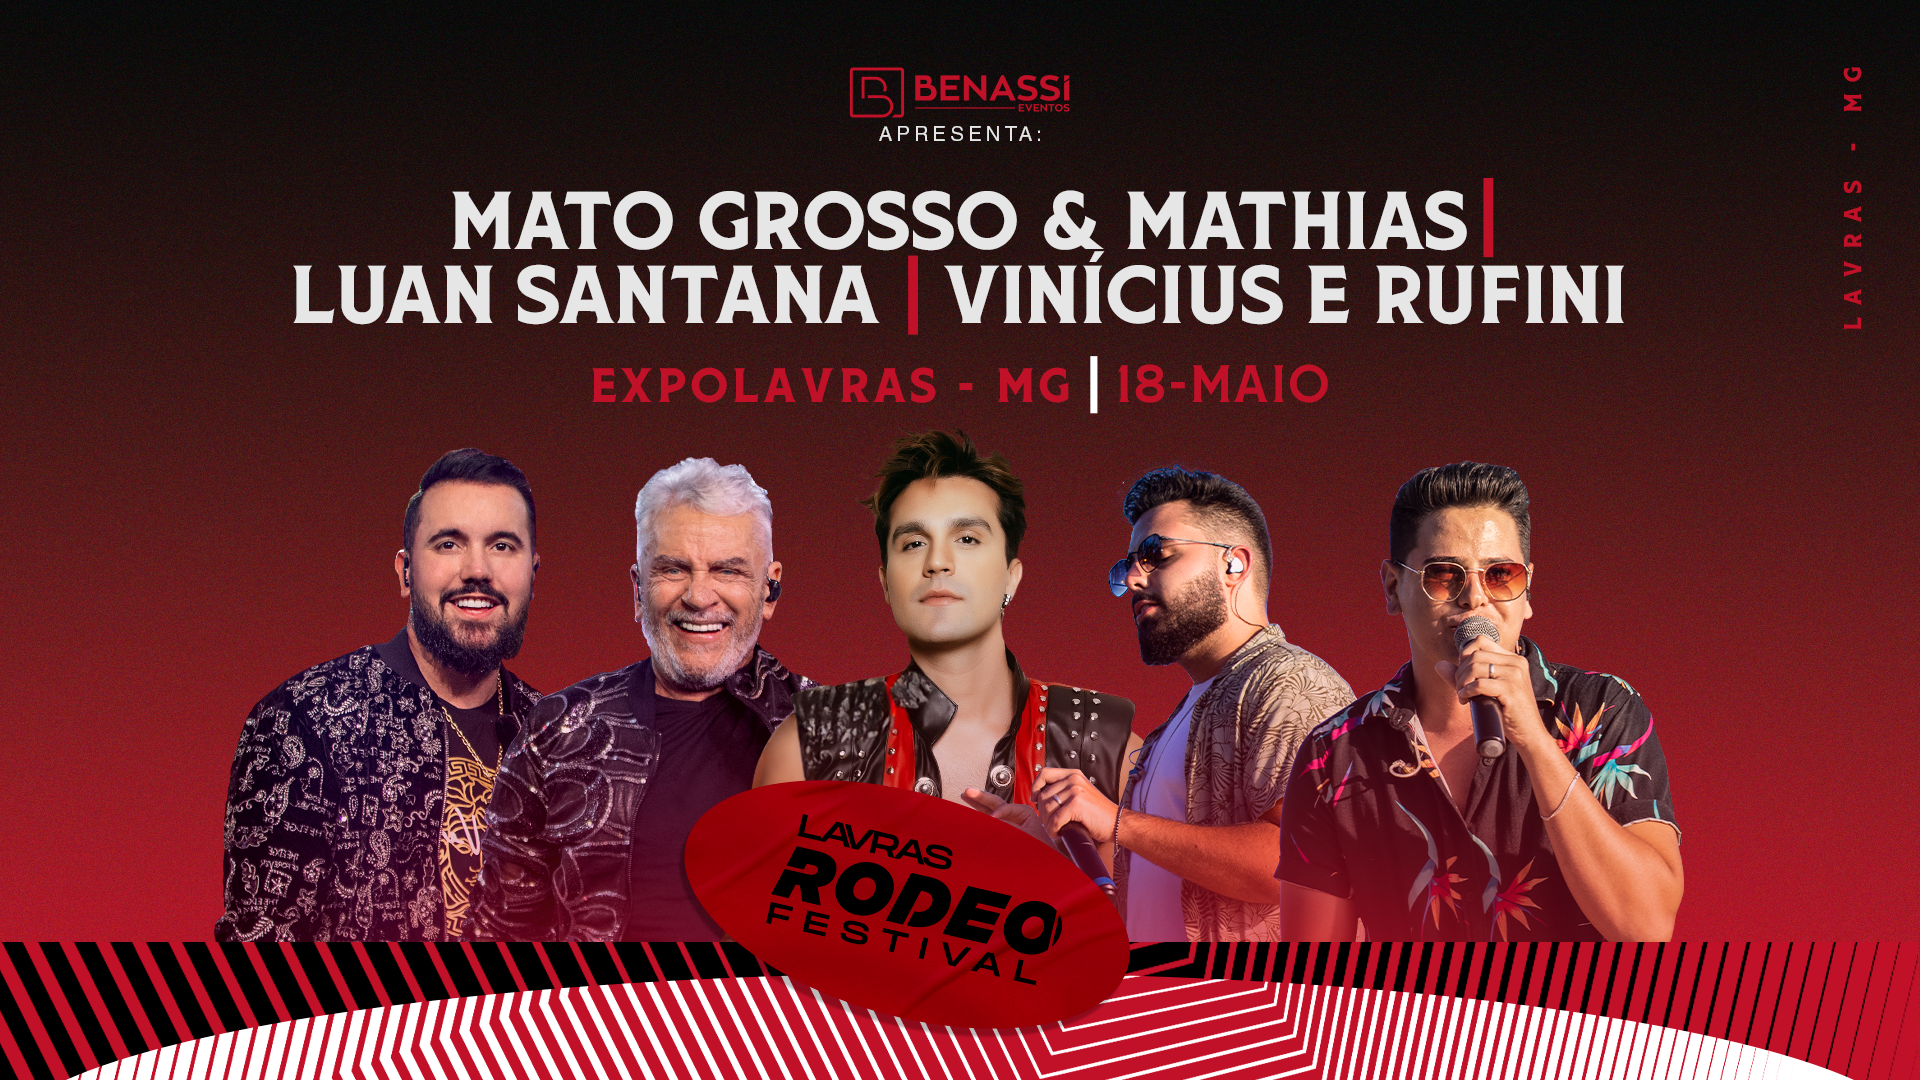 Lavras Rodeo Festival - MatoGrosso e Mathias + Luan Santana + Vinícius e Rufini em Lavras